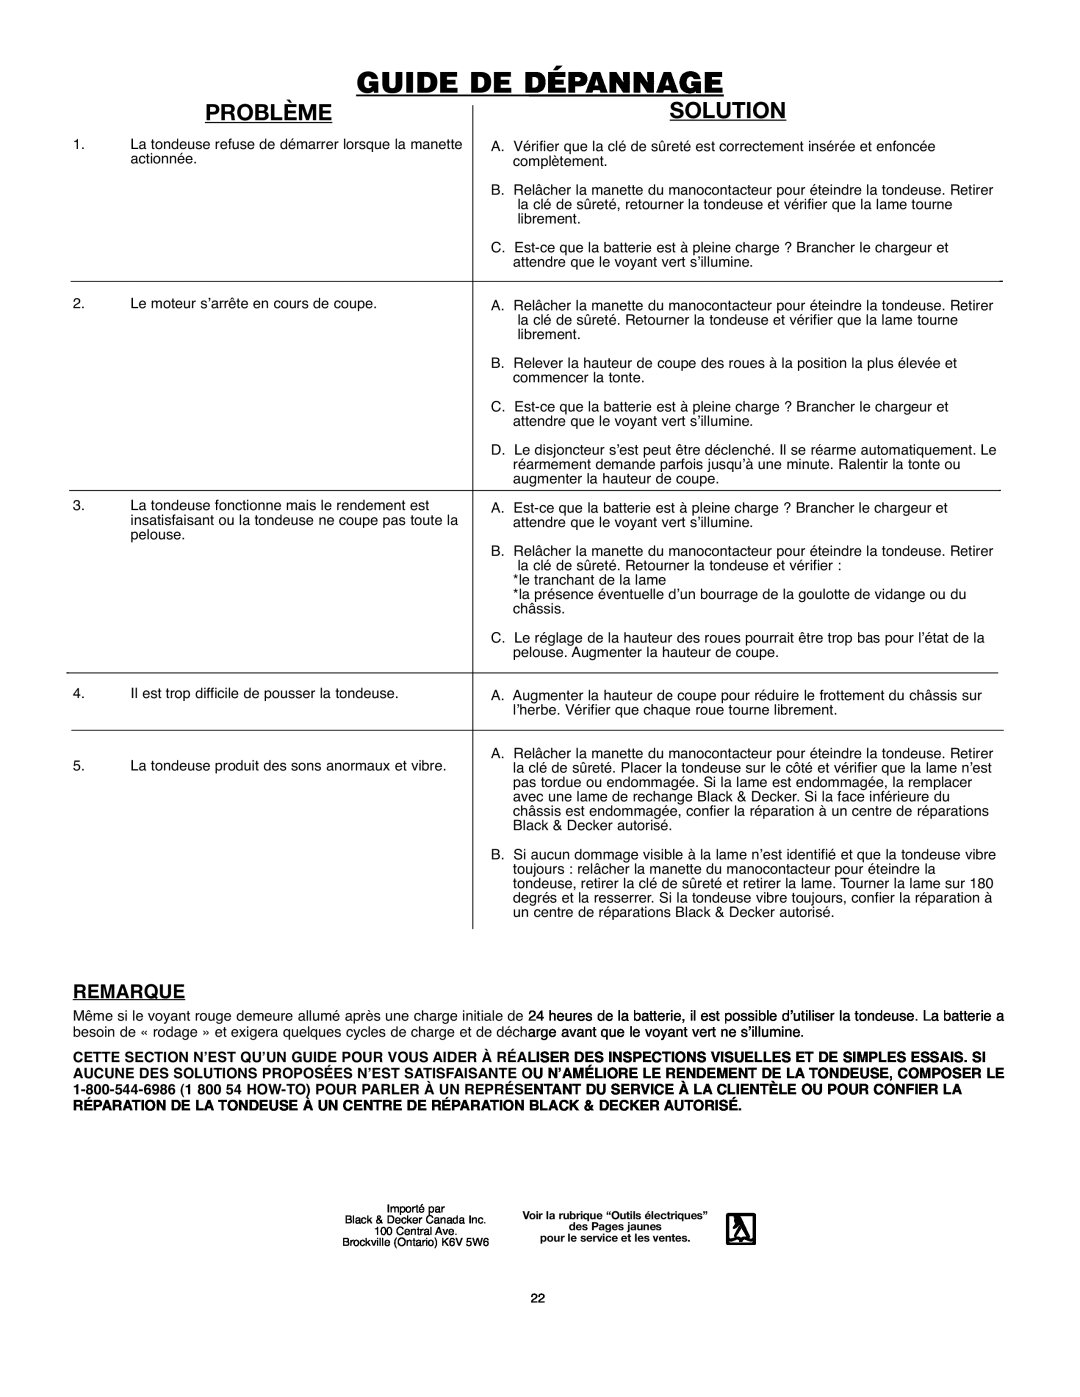 Black & Decker 90514757 instruction manual Guide De Dépannage, Problème, Solution, Remarque 